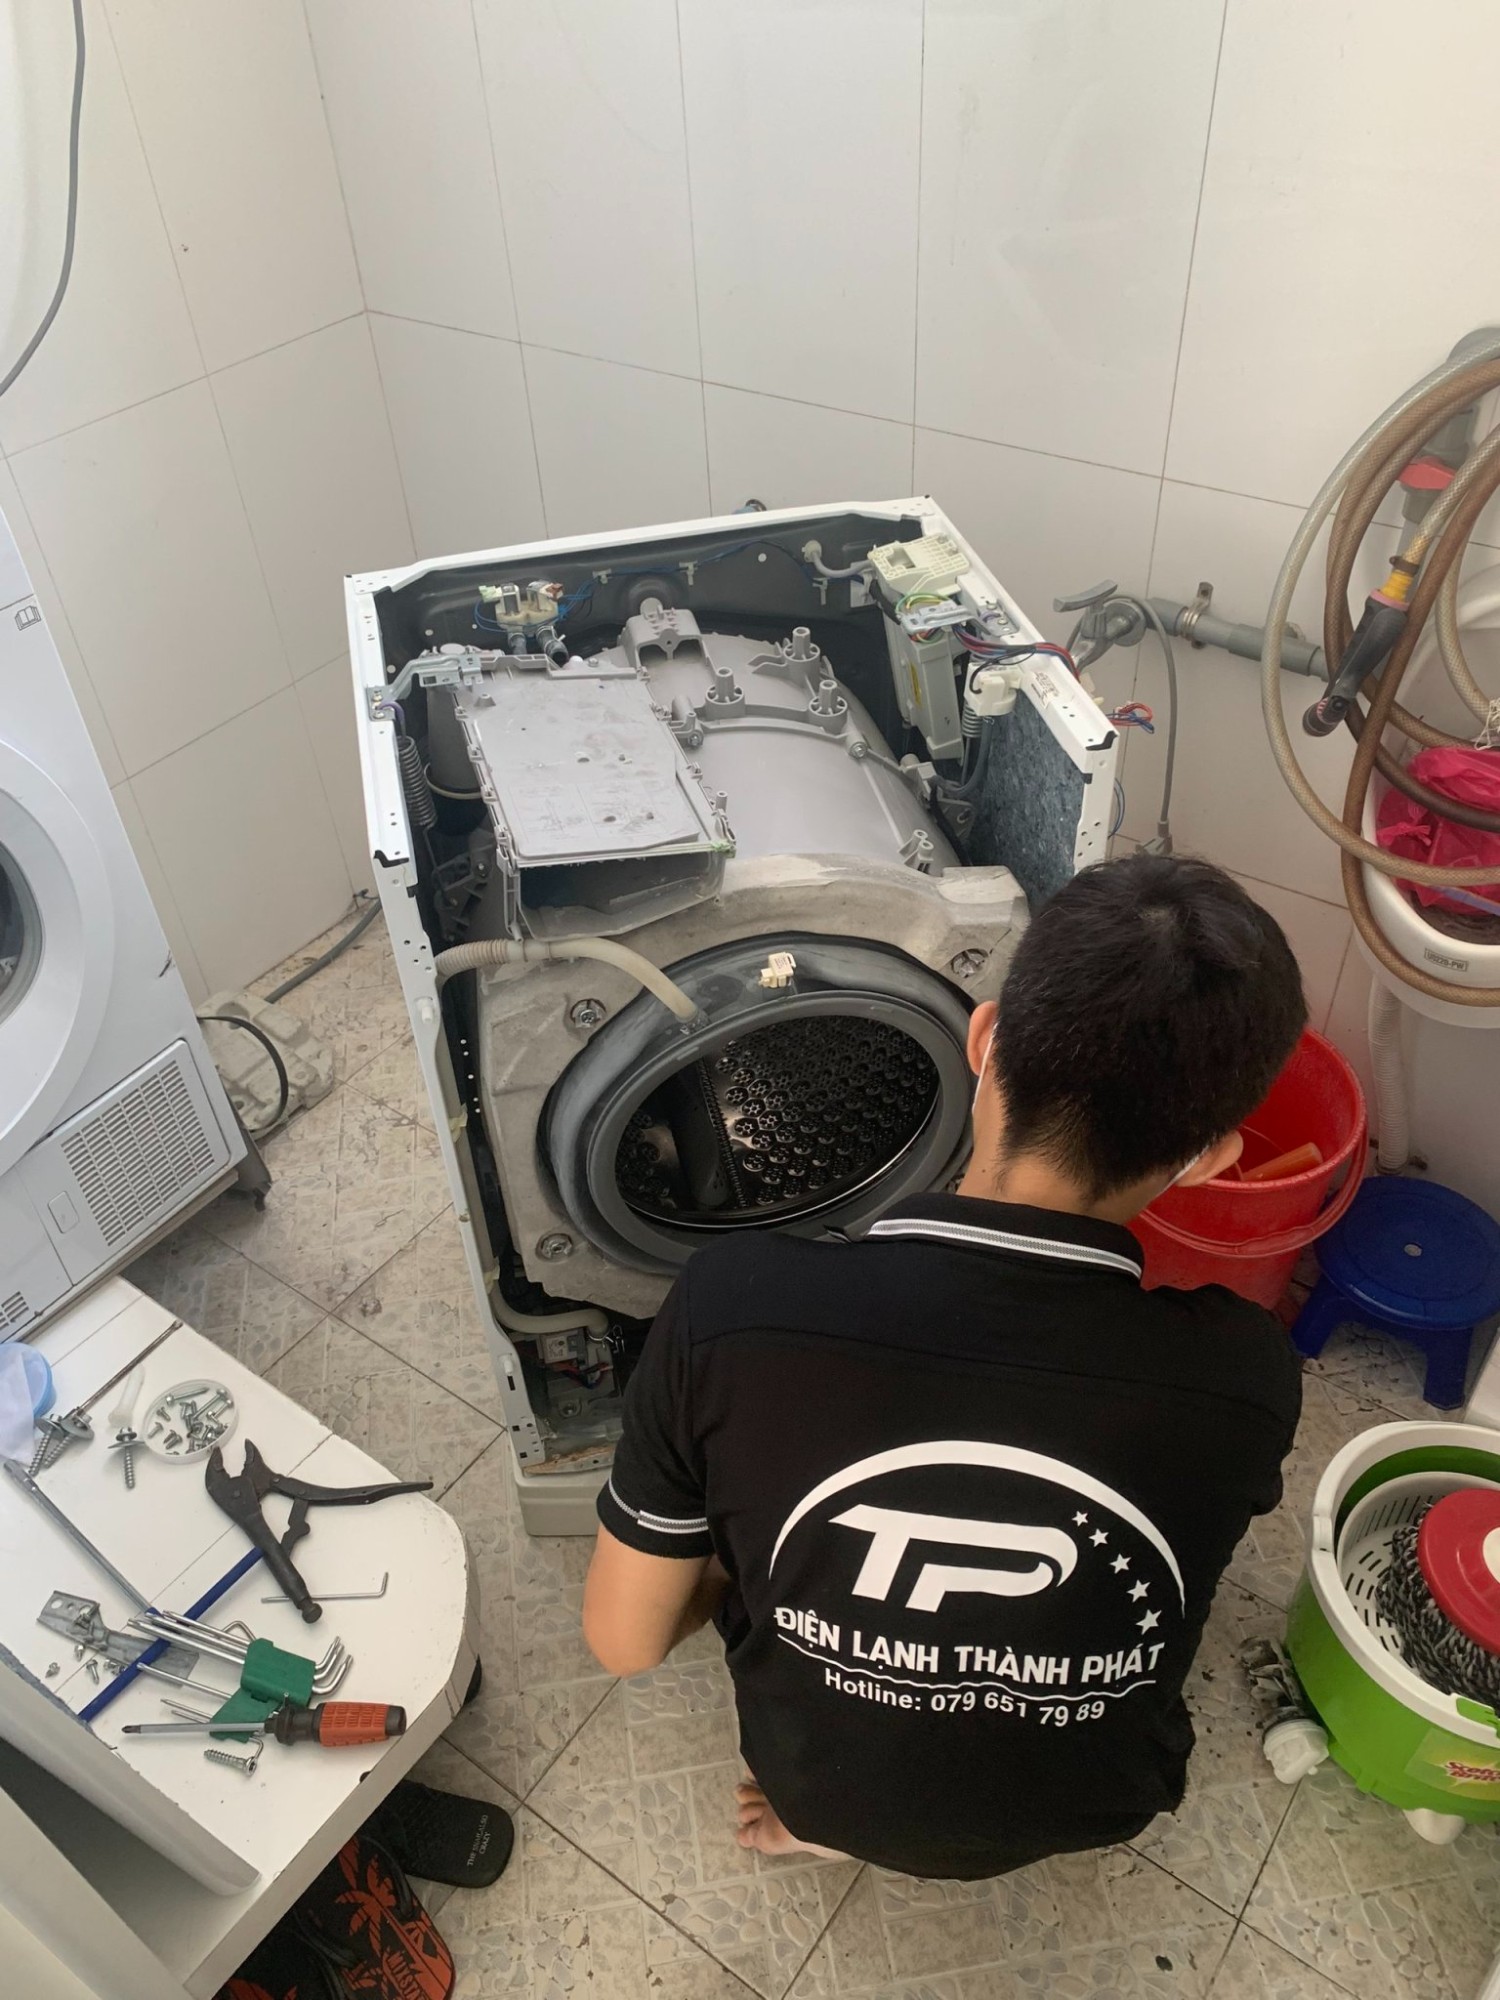 Sửa chữa máy giặt quận Bình Tân tại nhà